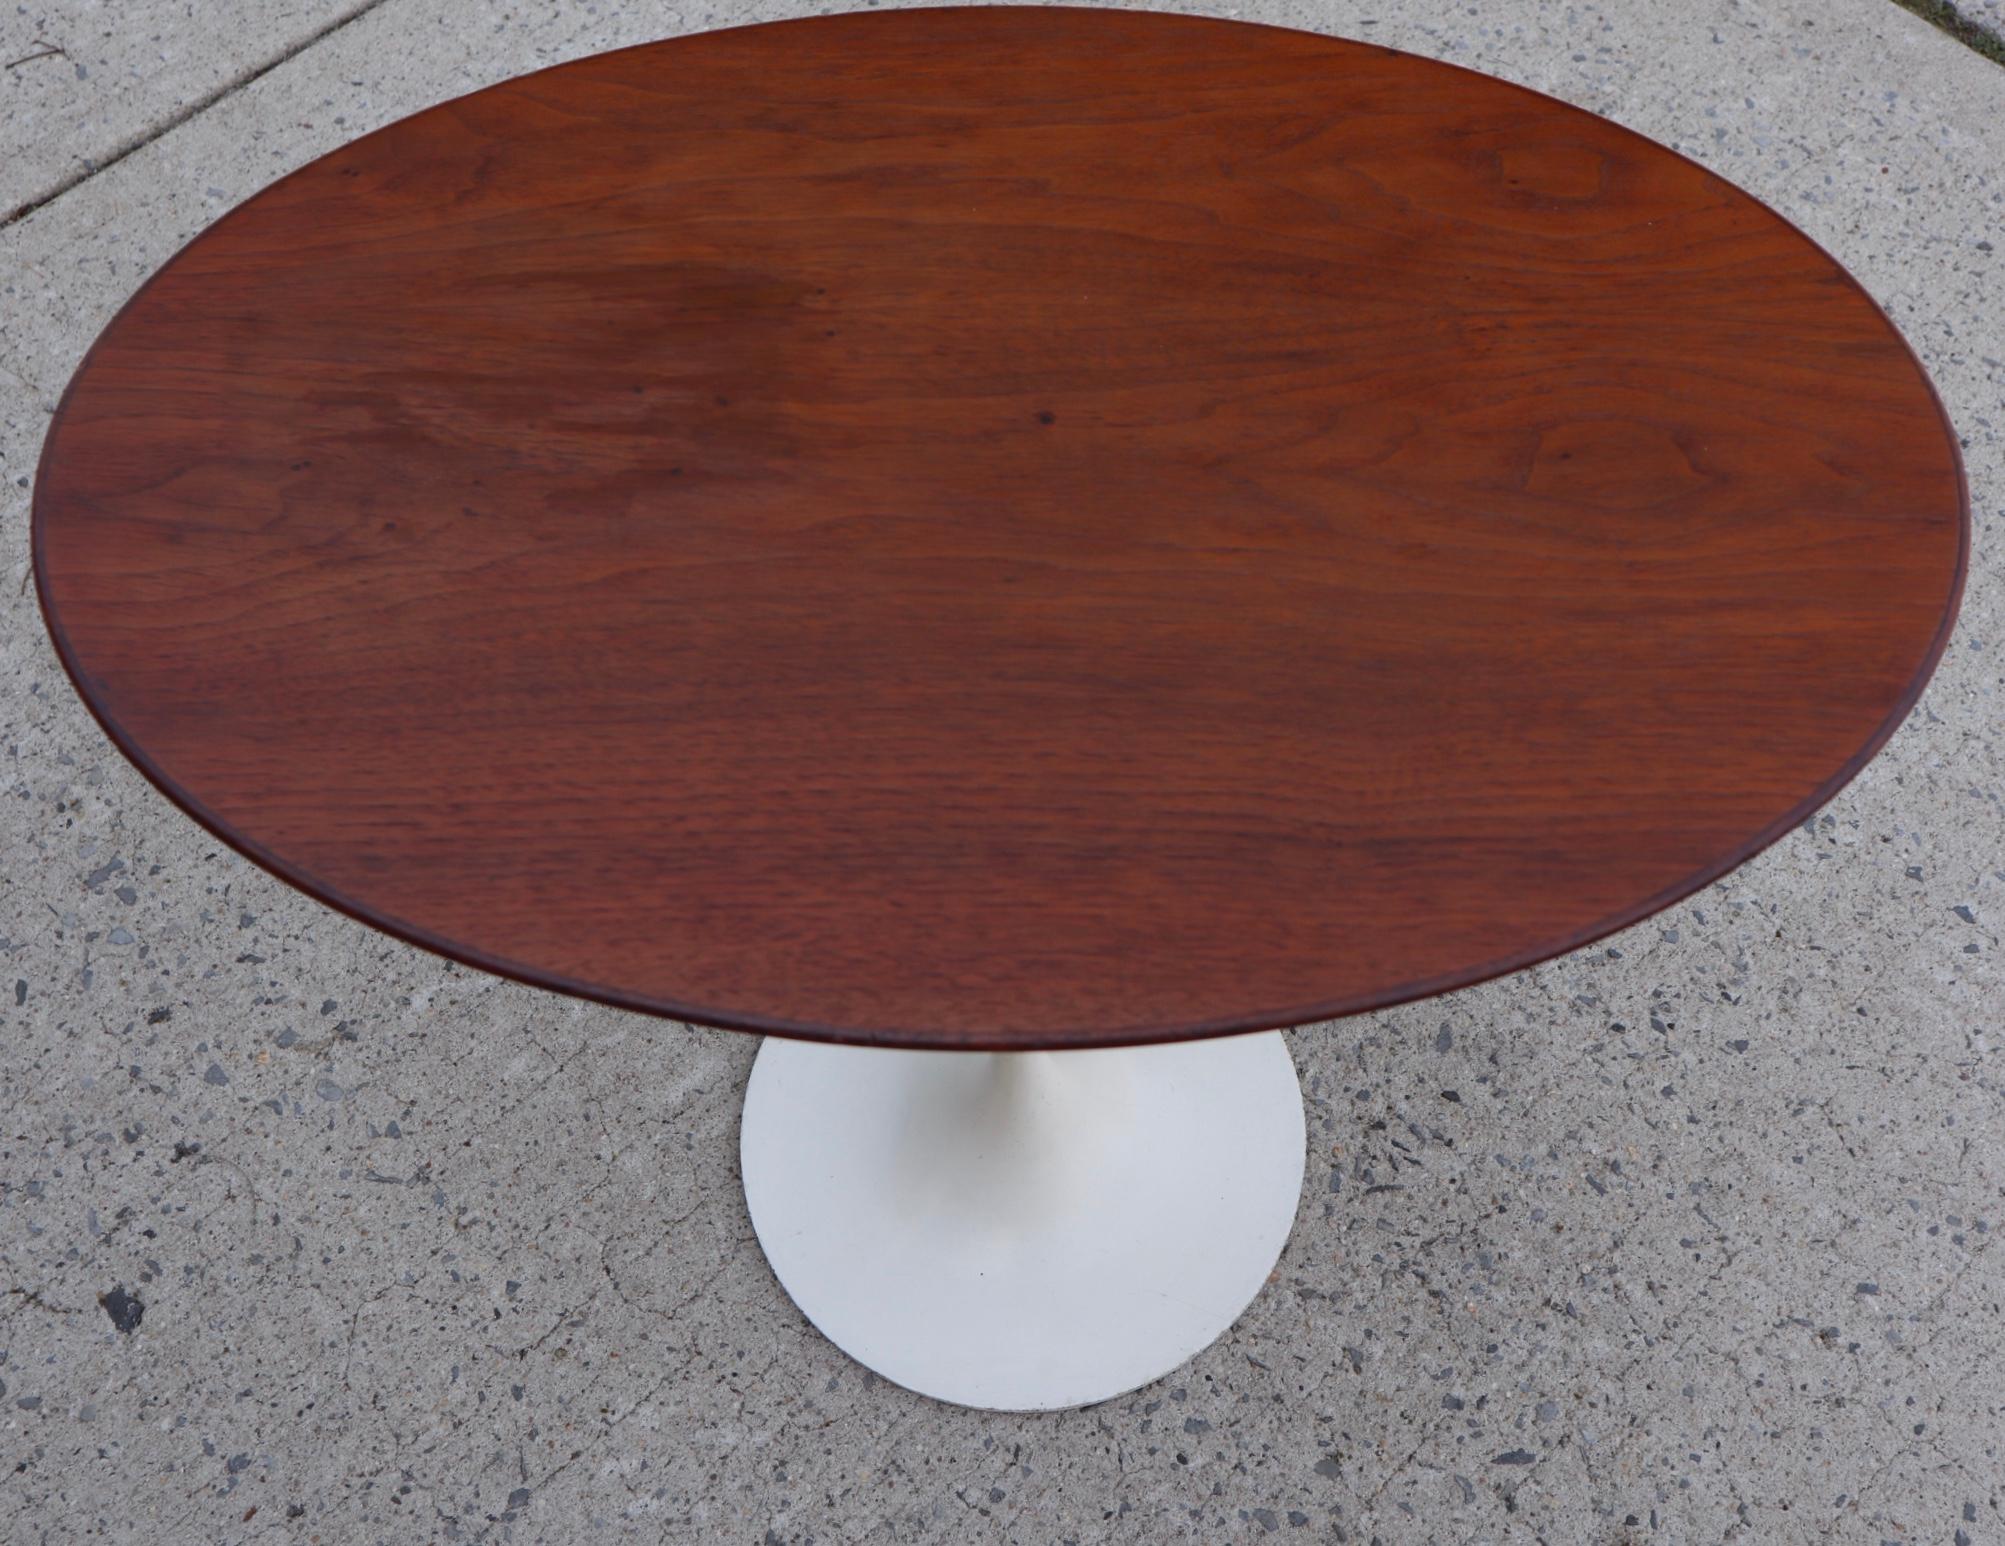 American Eero Saarinen for Knoll Walnut Elliptical Side Table